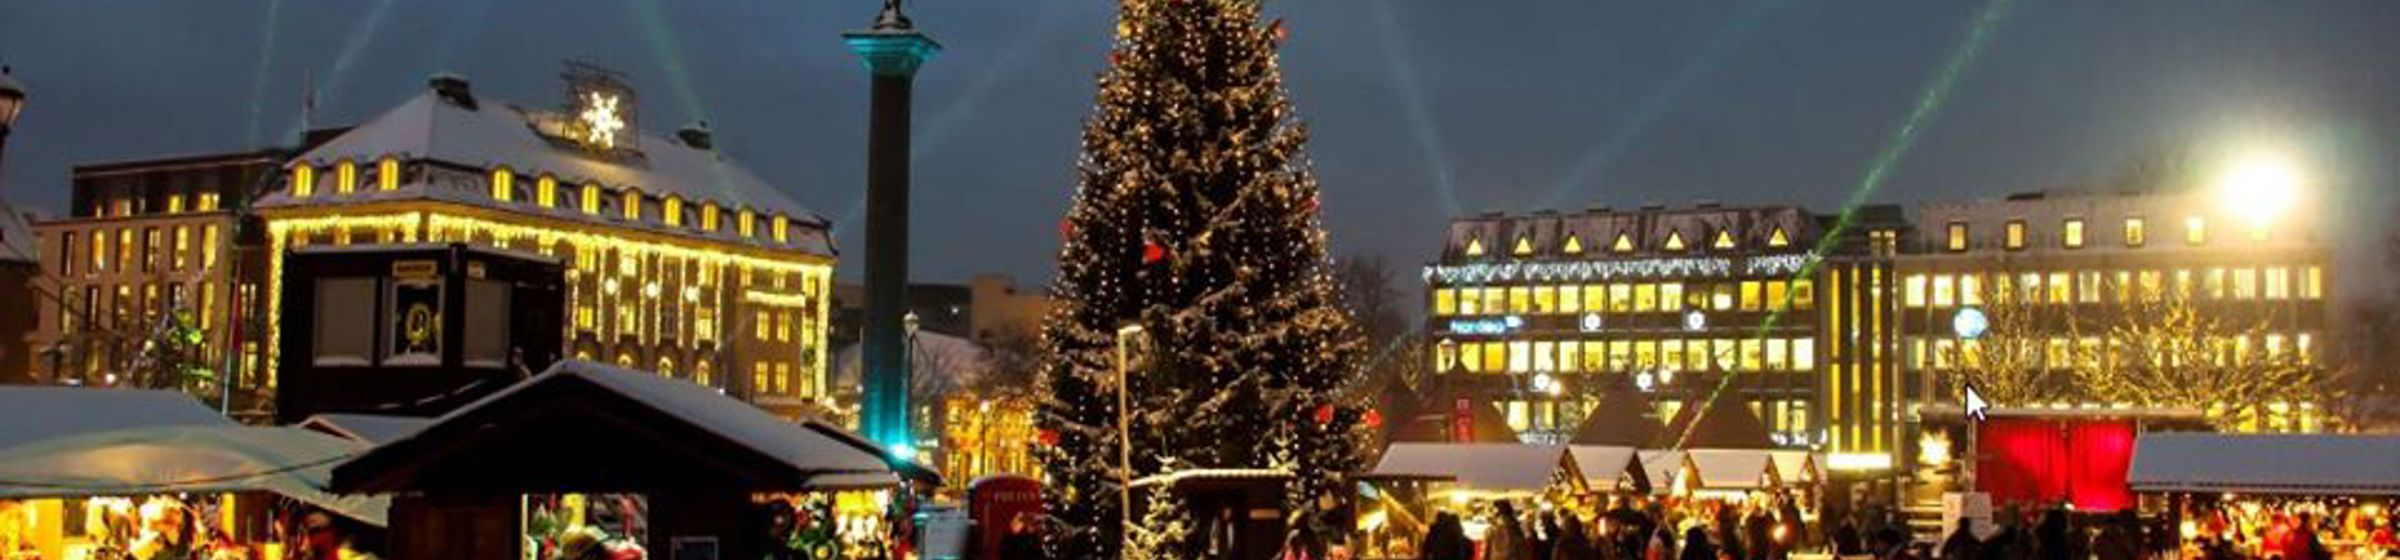 Torvet i Trondheim under julemarkedet med juletre og salgsboder